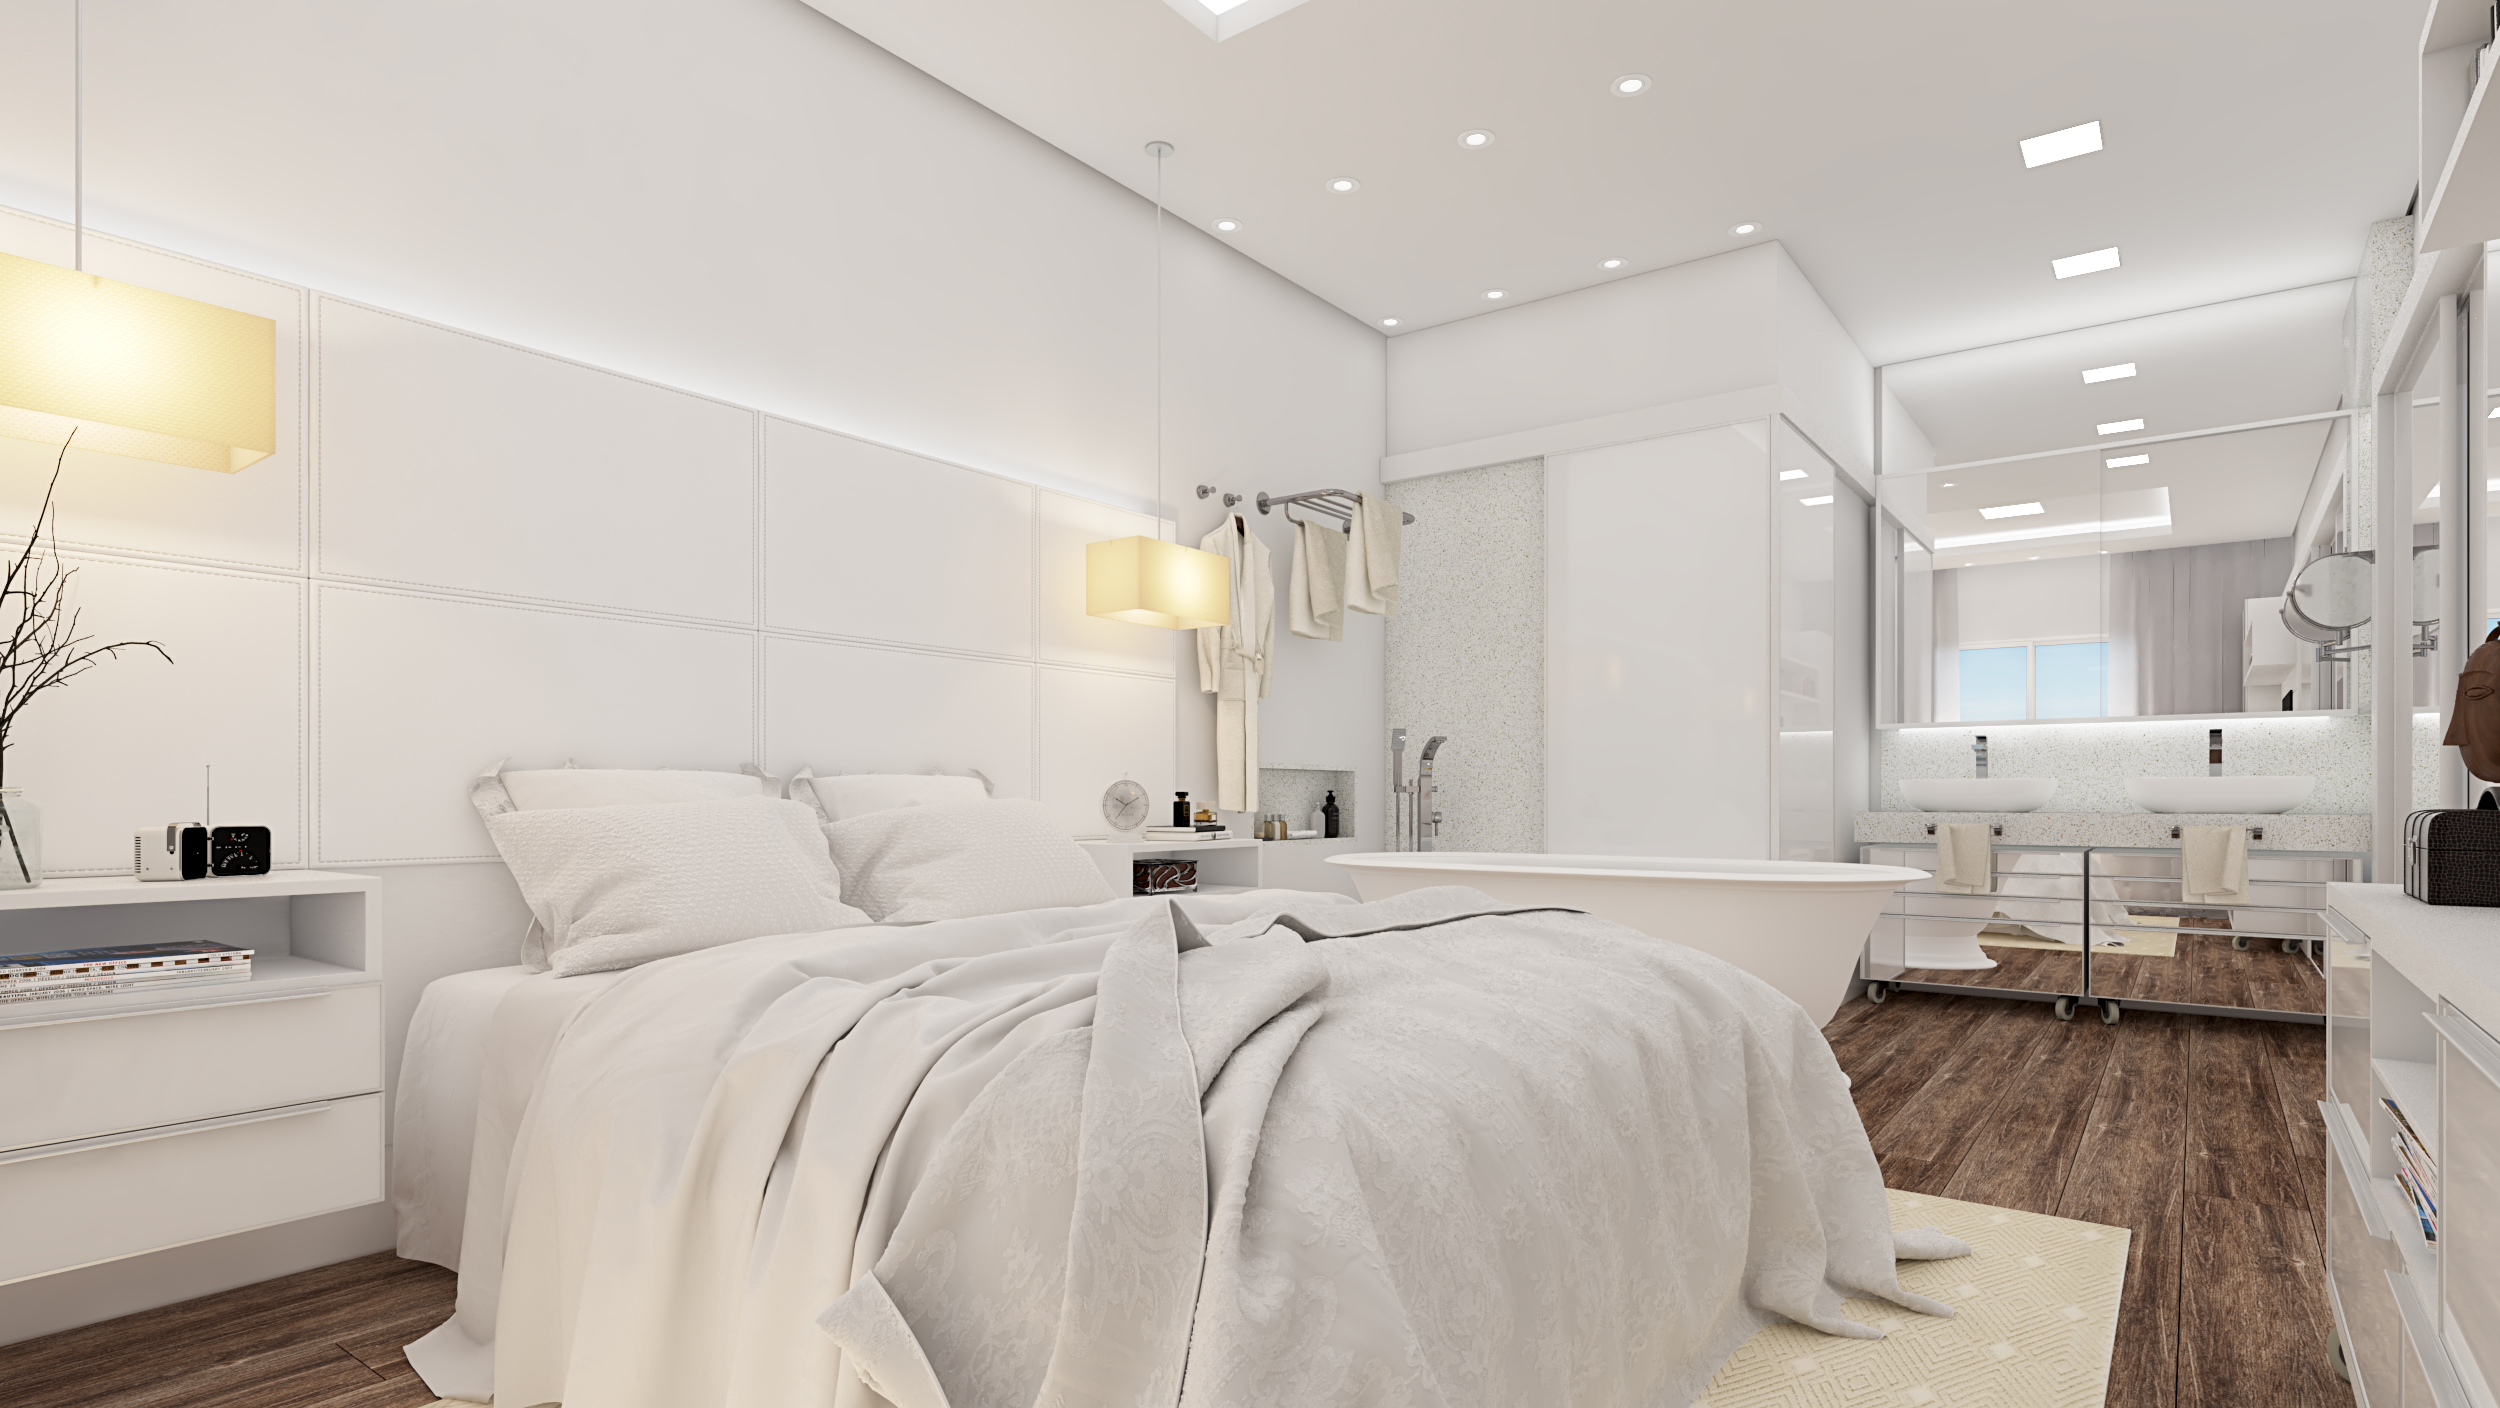 Para integrar o quarto ao banheiro e manter a privacidade, deixe apenas a bancada exposta (Projeto: Ariane Rosa Arquitetura e Design)